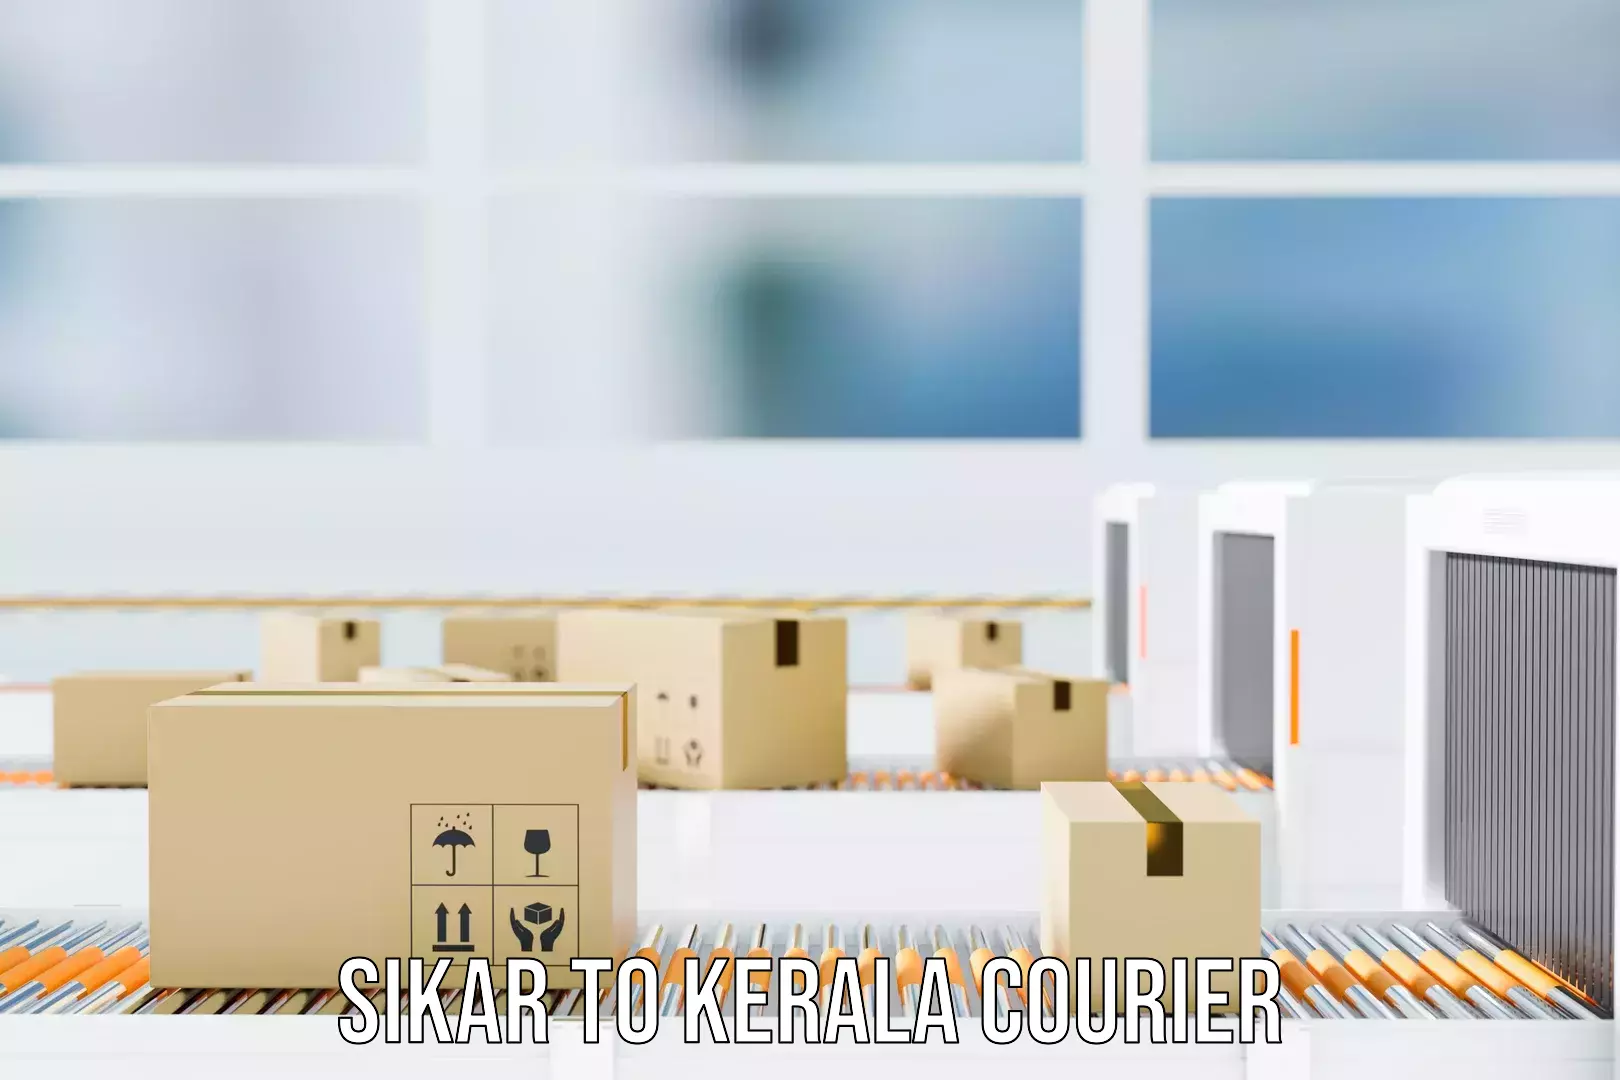 Luggage transit service Sikar to Kerala